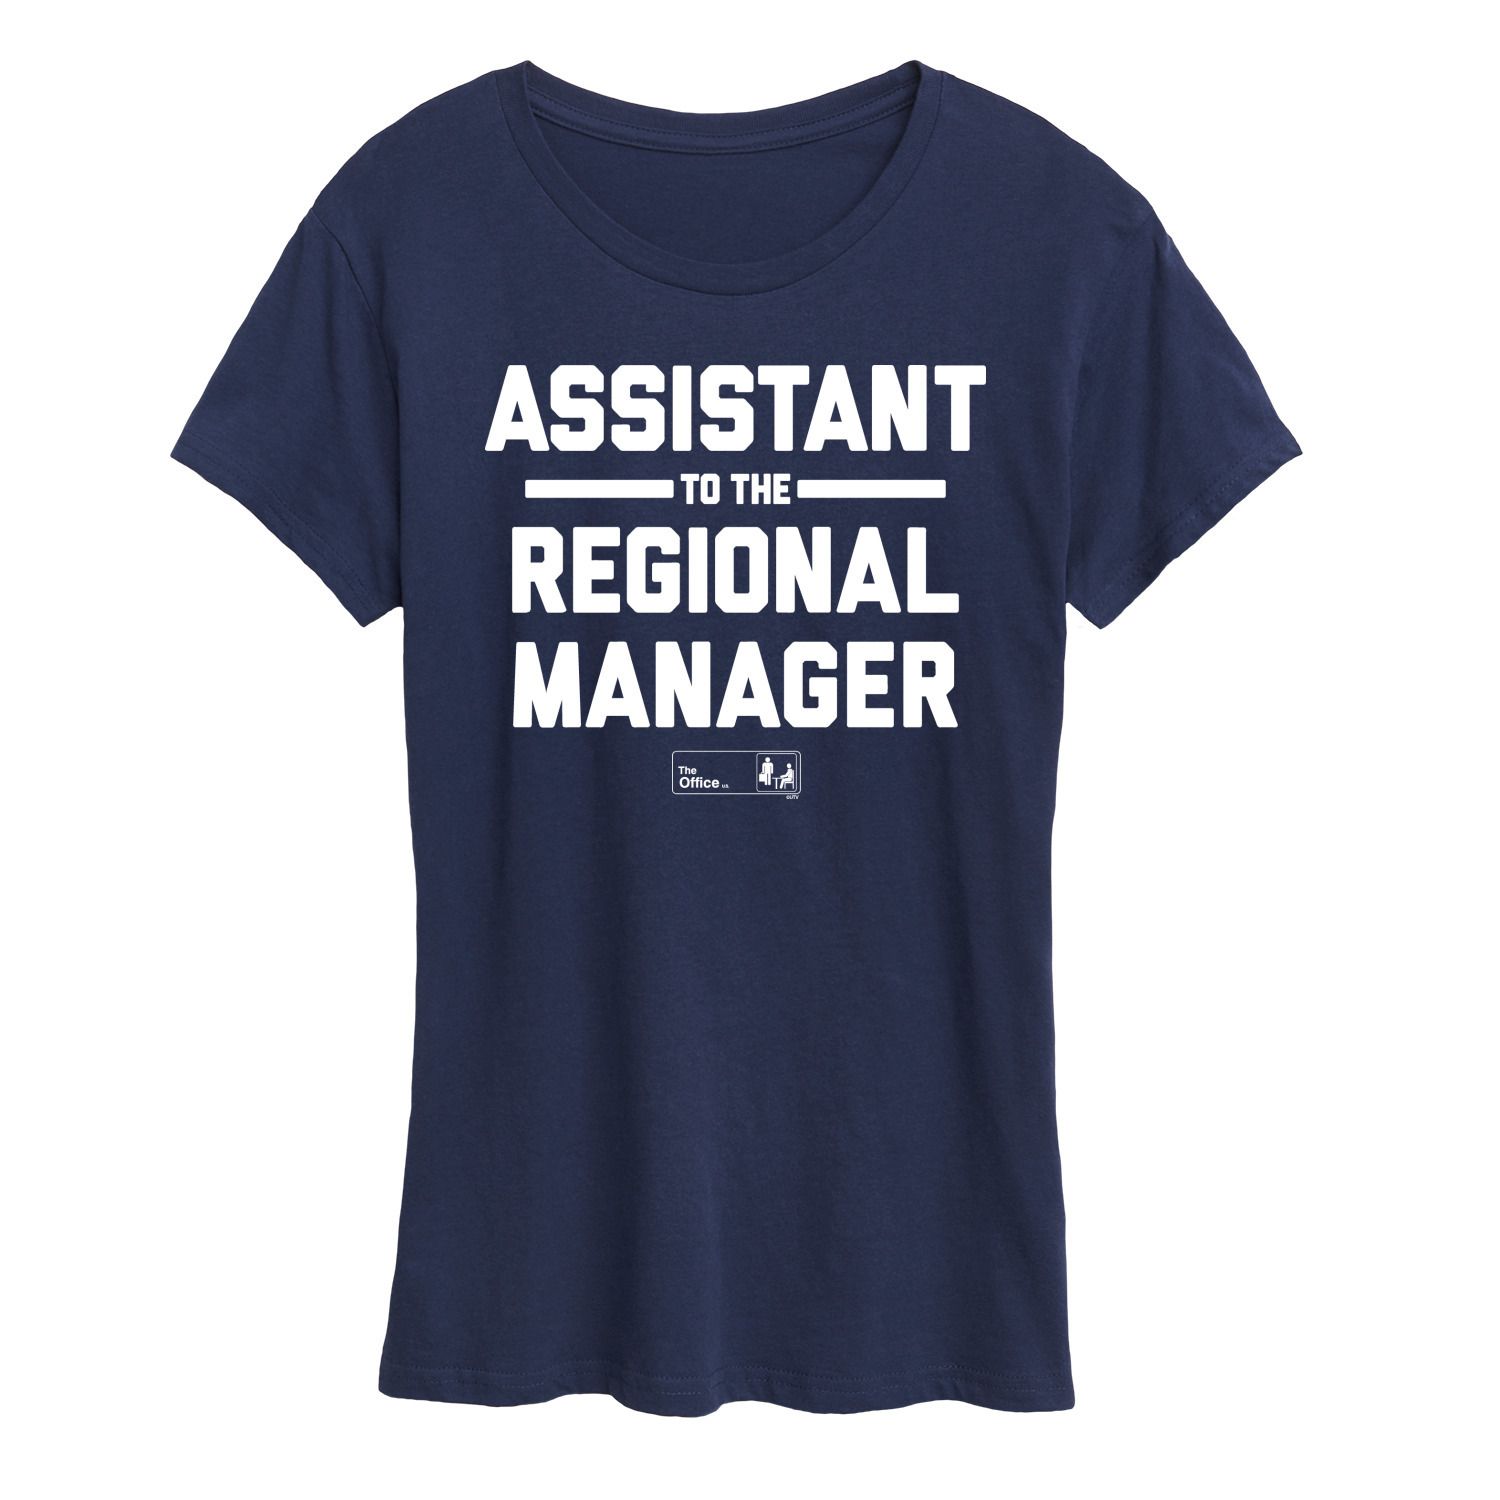 Женская футболка с рисунком «Офис-помощник регионального менеджера» Licensed Character, темно-синий